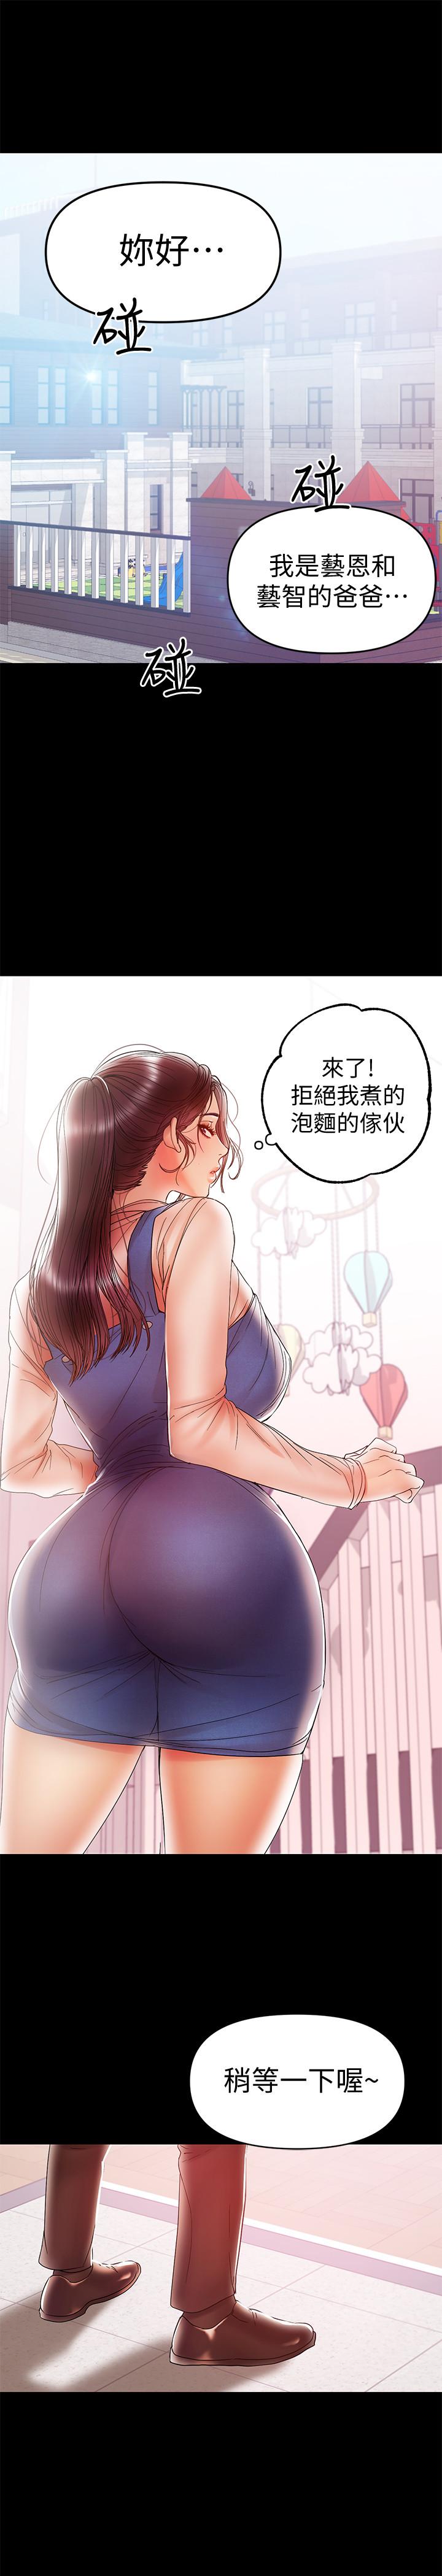 韩国污漫画 兼職奶媽 第20话-被丈夫暴力相向 1